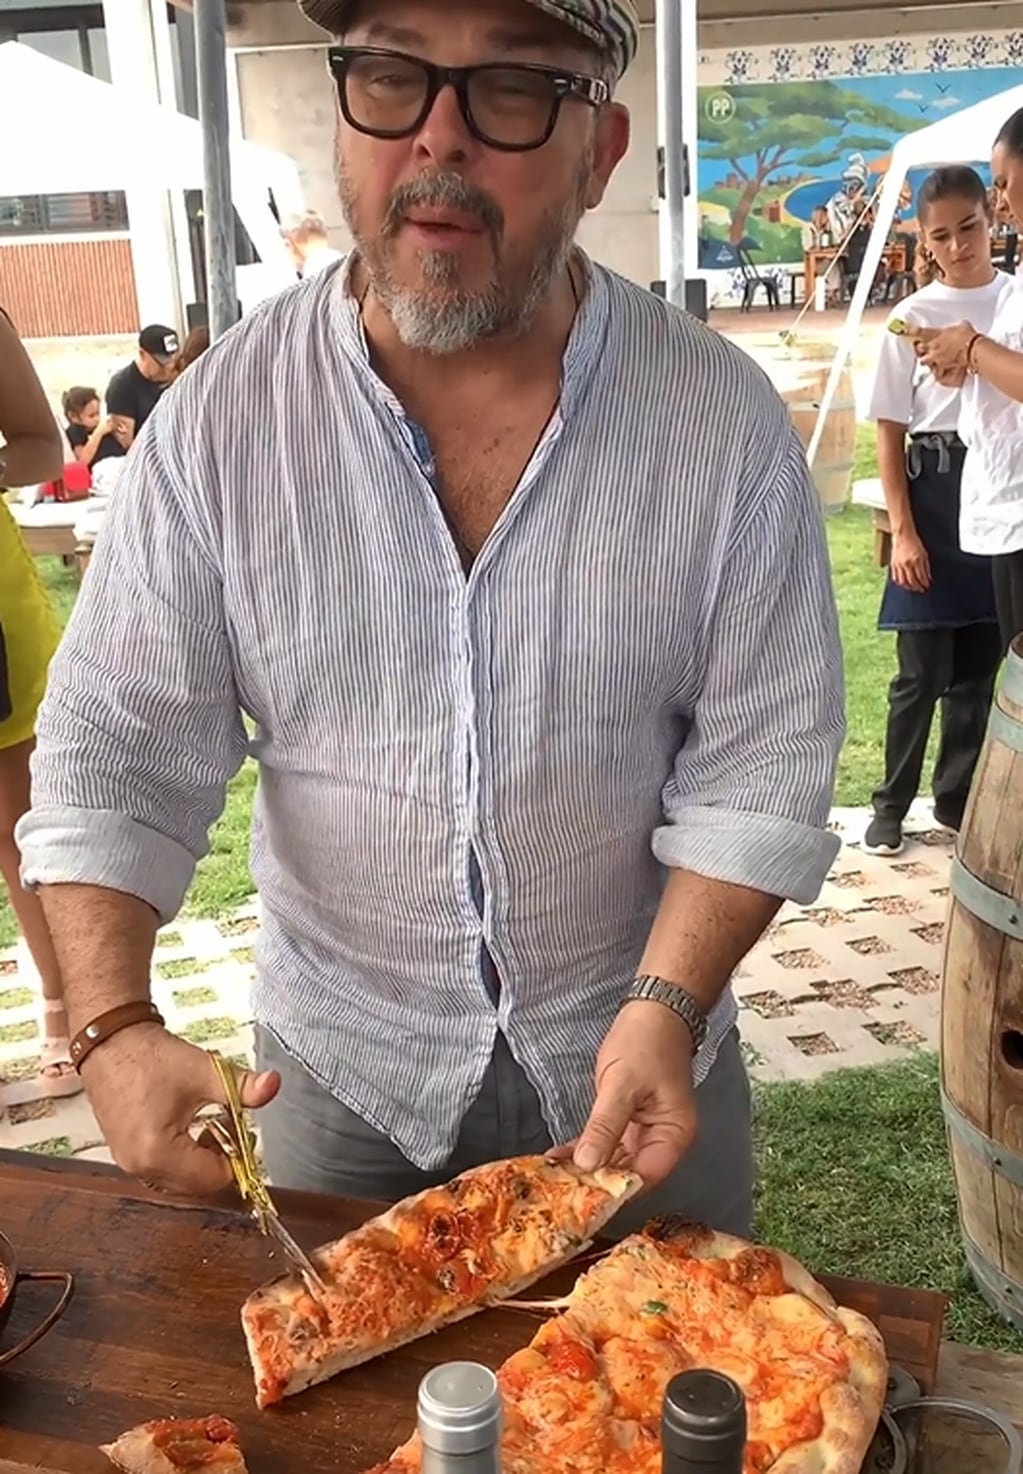 Donato celebró su cumpleaños en Mendoza y compartió los secretos de la pizza “preferida de los pizzeros”. Fuente: Instagram